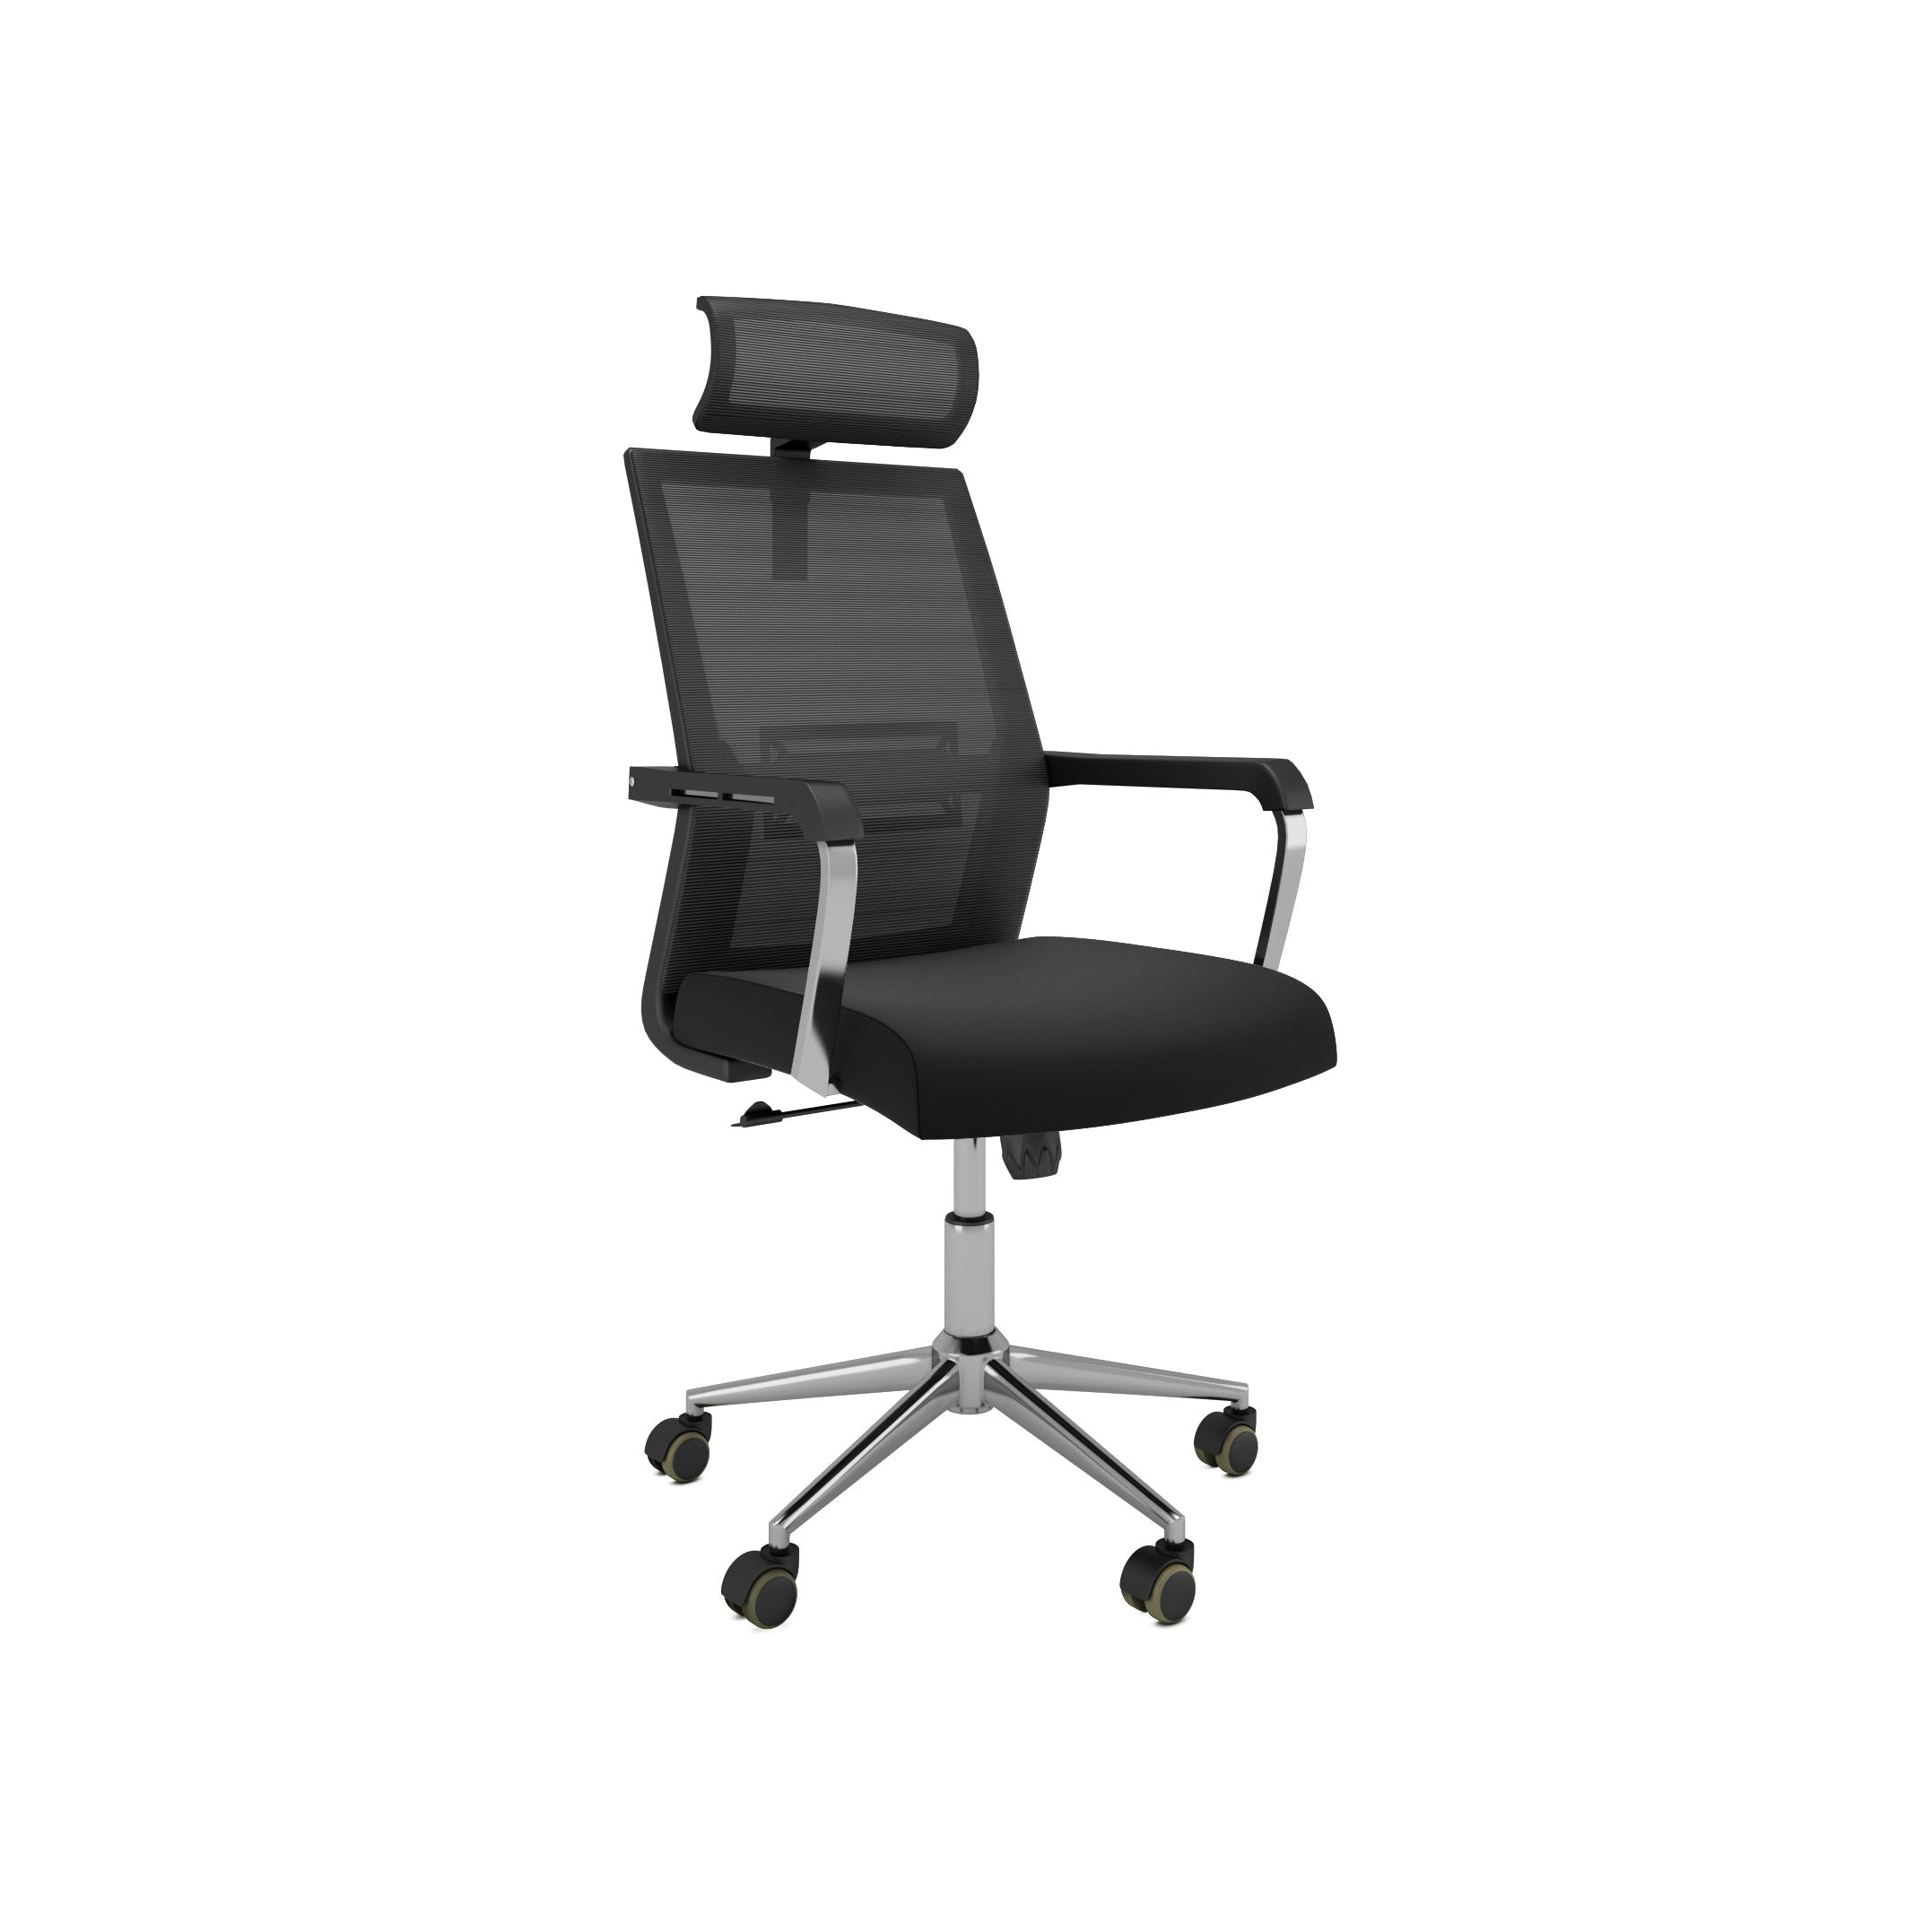 Nancy's Jacksonville Office Chair - Swivel chair - Tiltable Backrest - Mesh - Ergonomic - Headrest - Black - Plastic - 55 x 56 x 115-131 cm